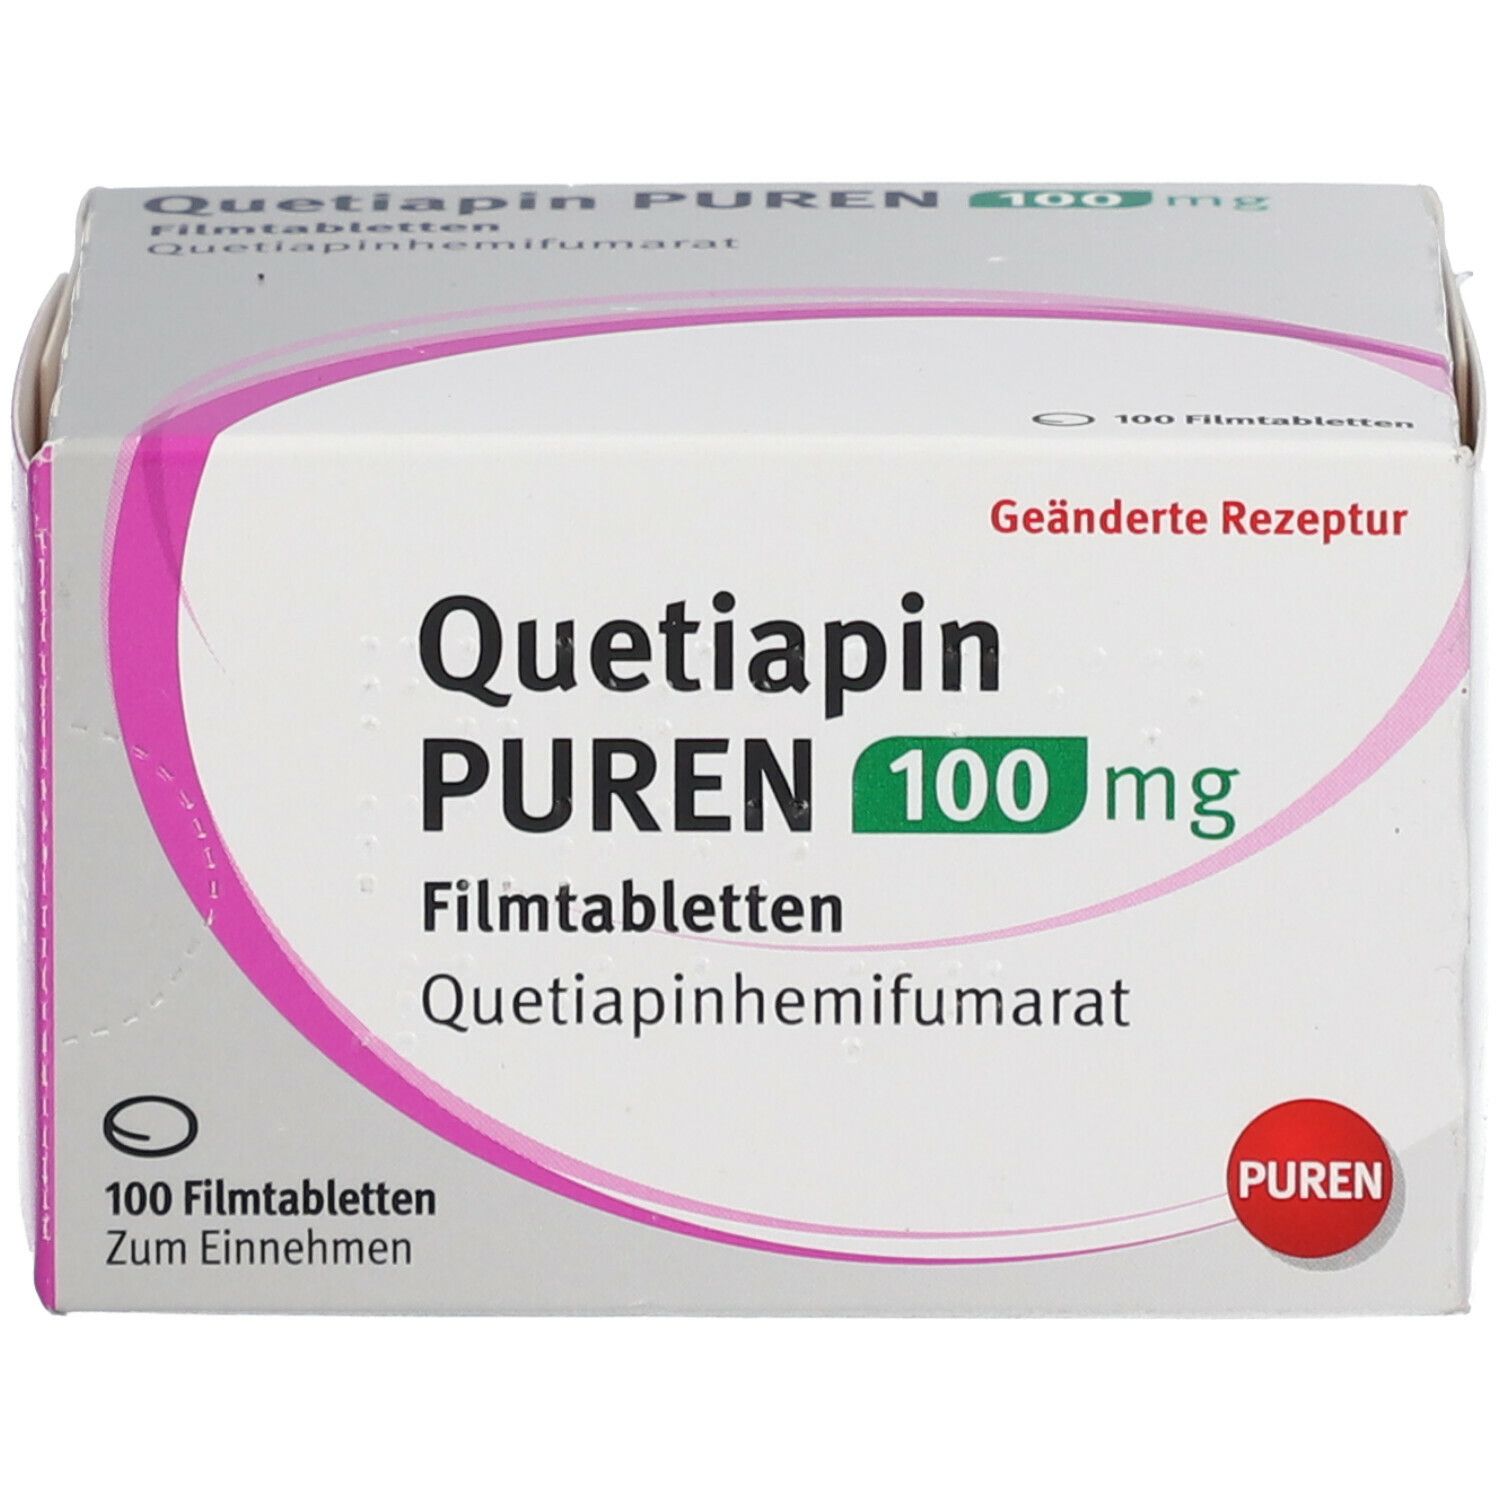 Quetiapin PUREN 100 mg